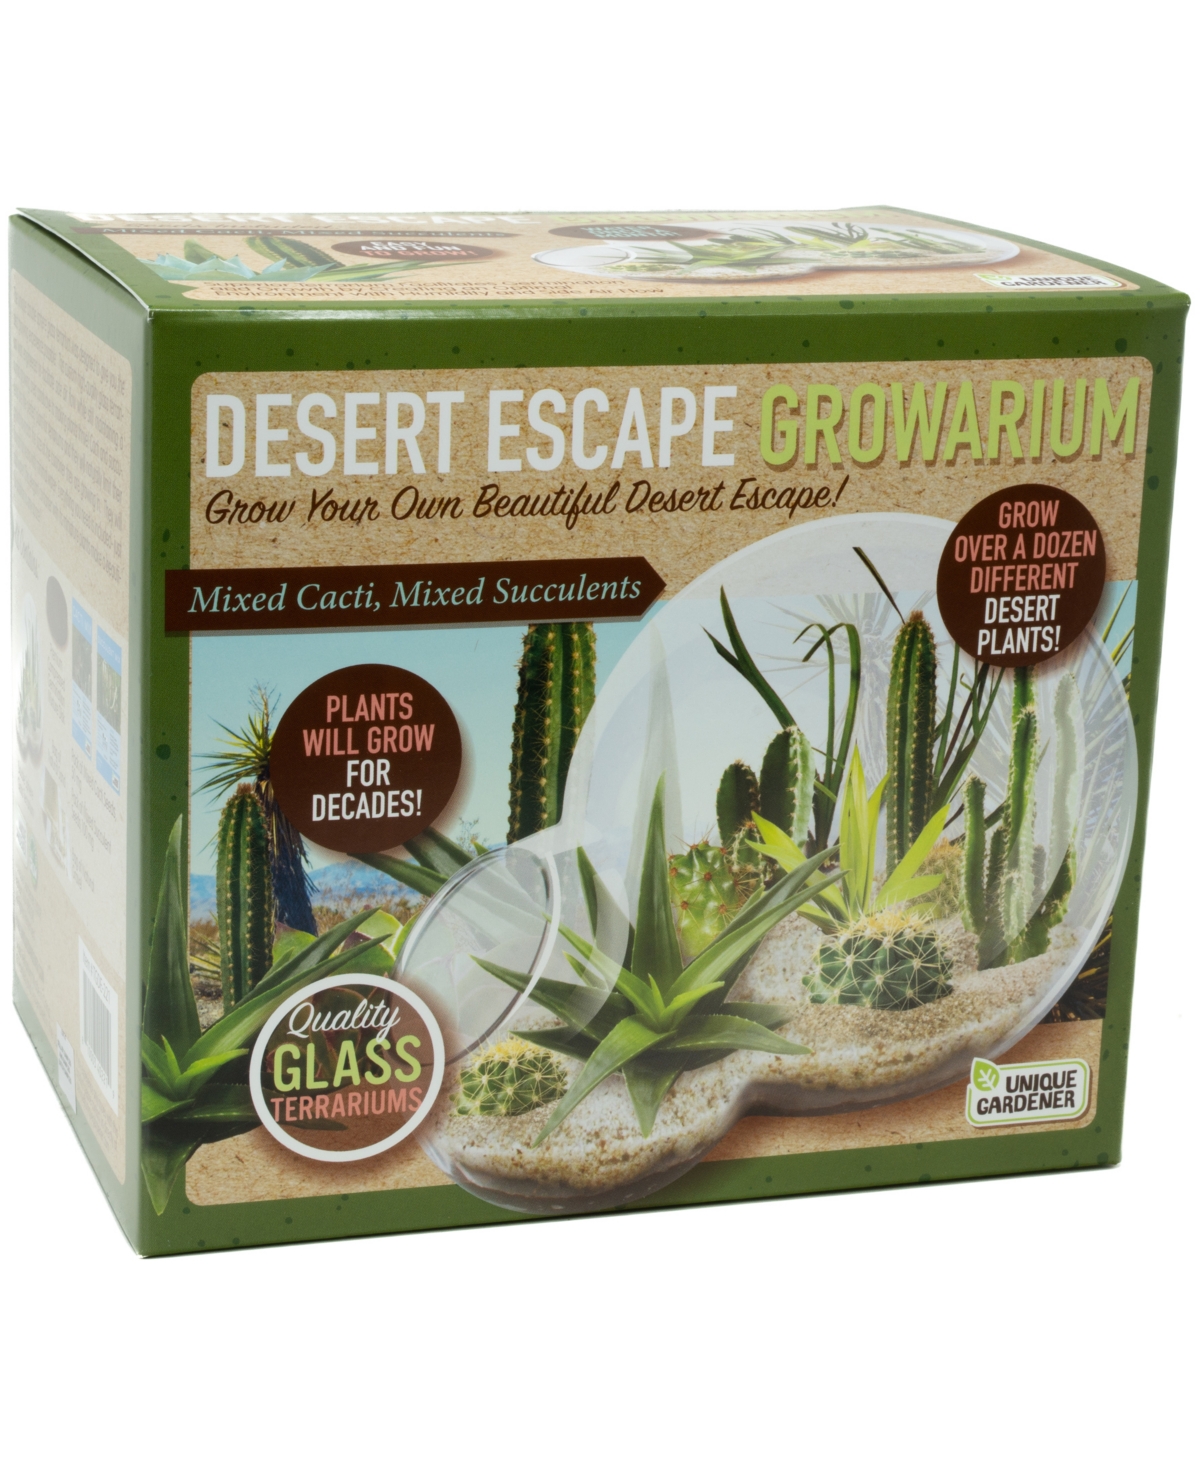 Shop Areyougame Unique Gardener Double Sphere Glass Terrarium Desert Escape Growarium Plant Kit In No Color